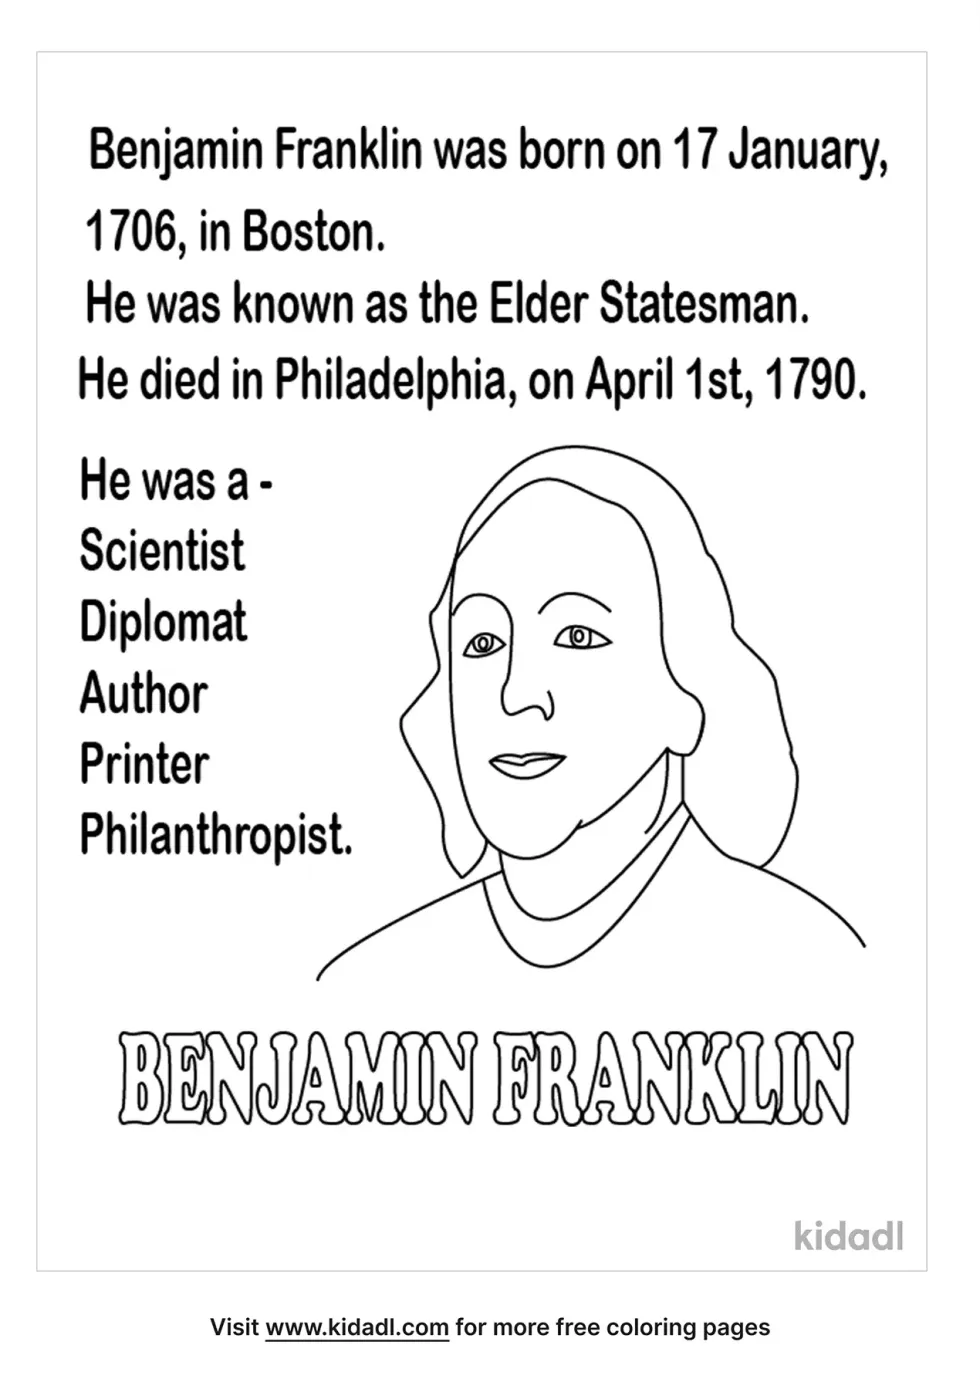 Benjamin Franklin Statesman